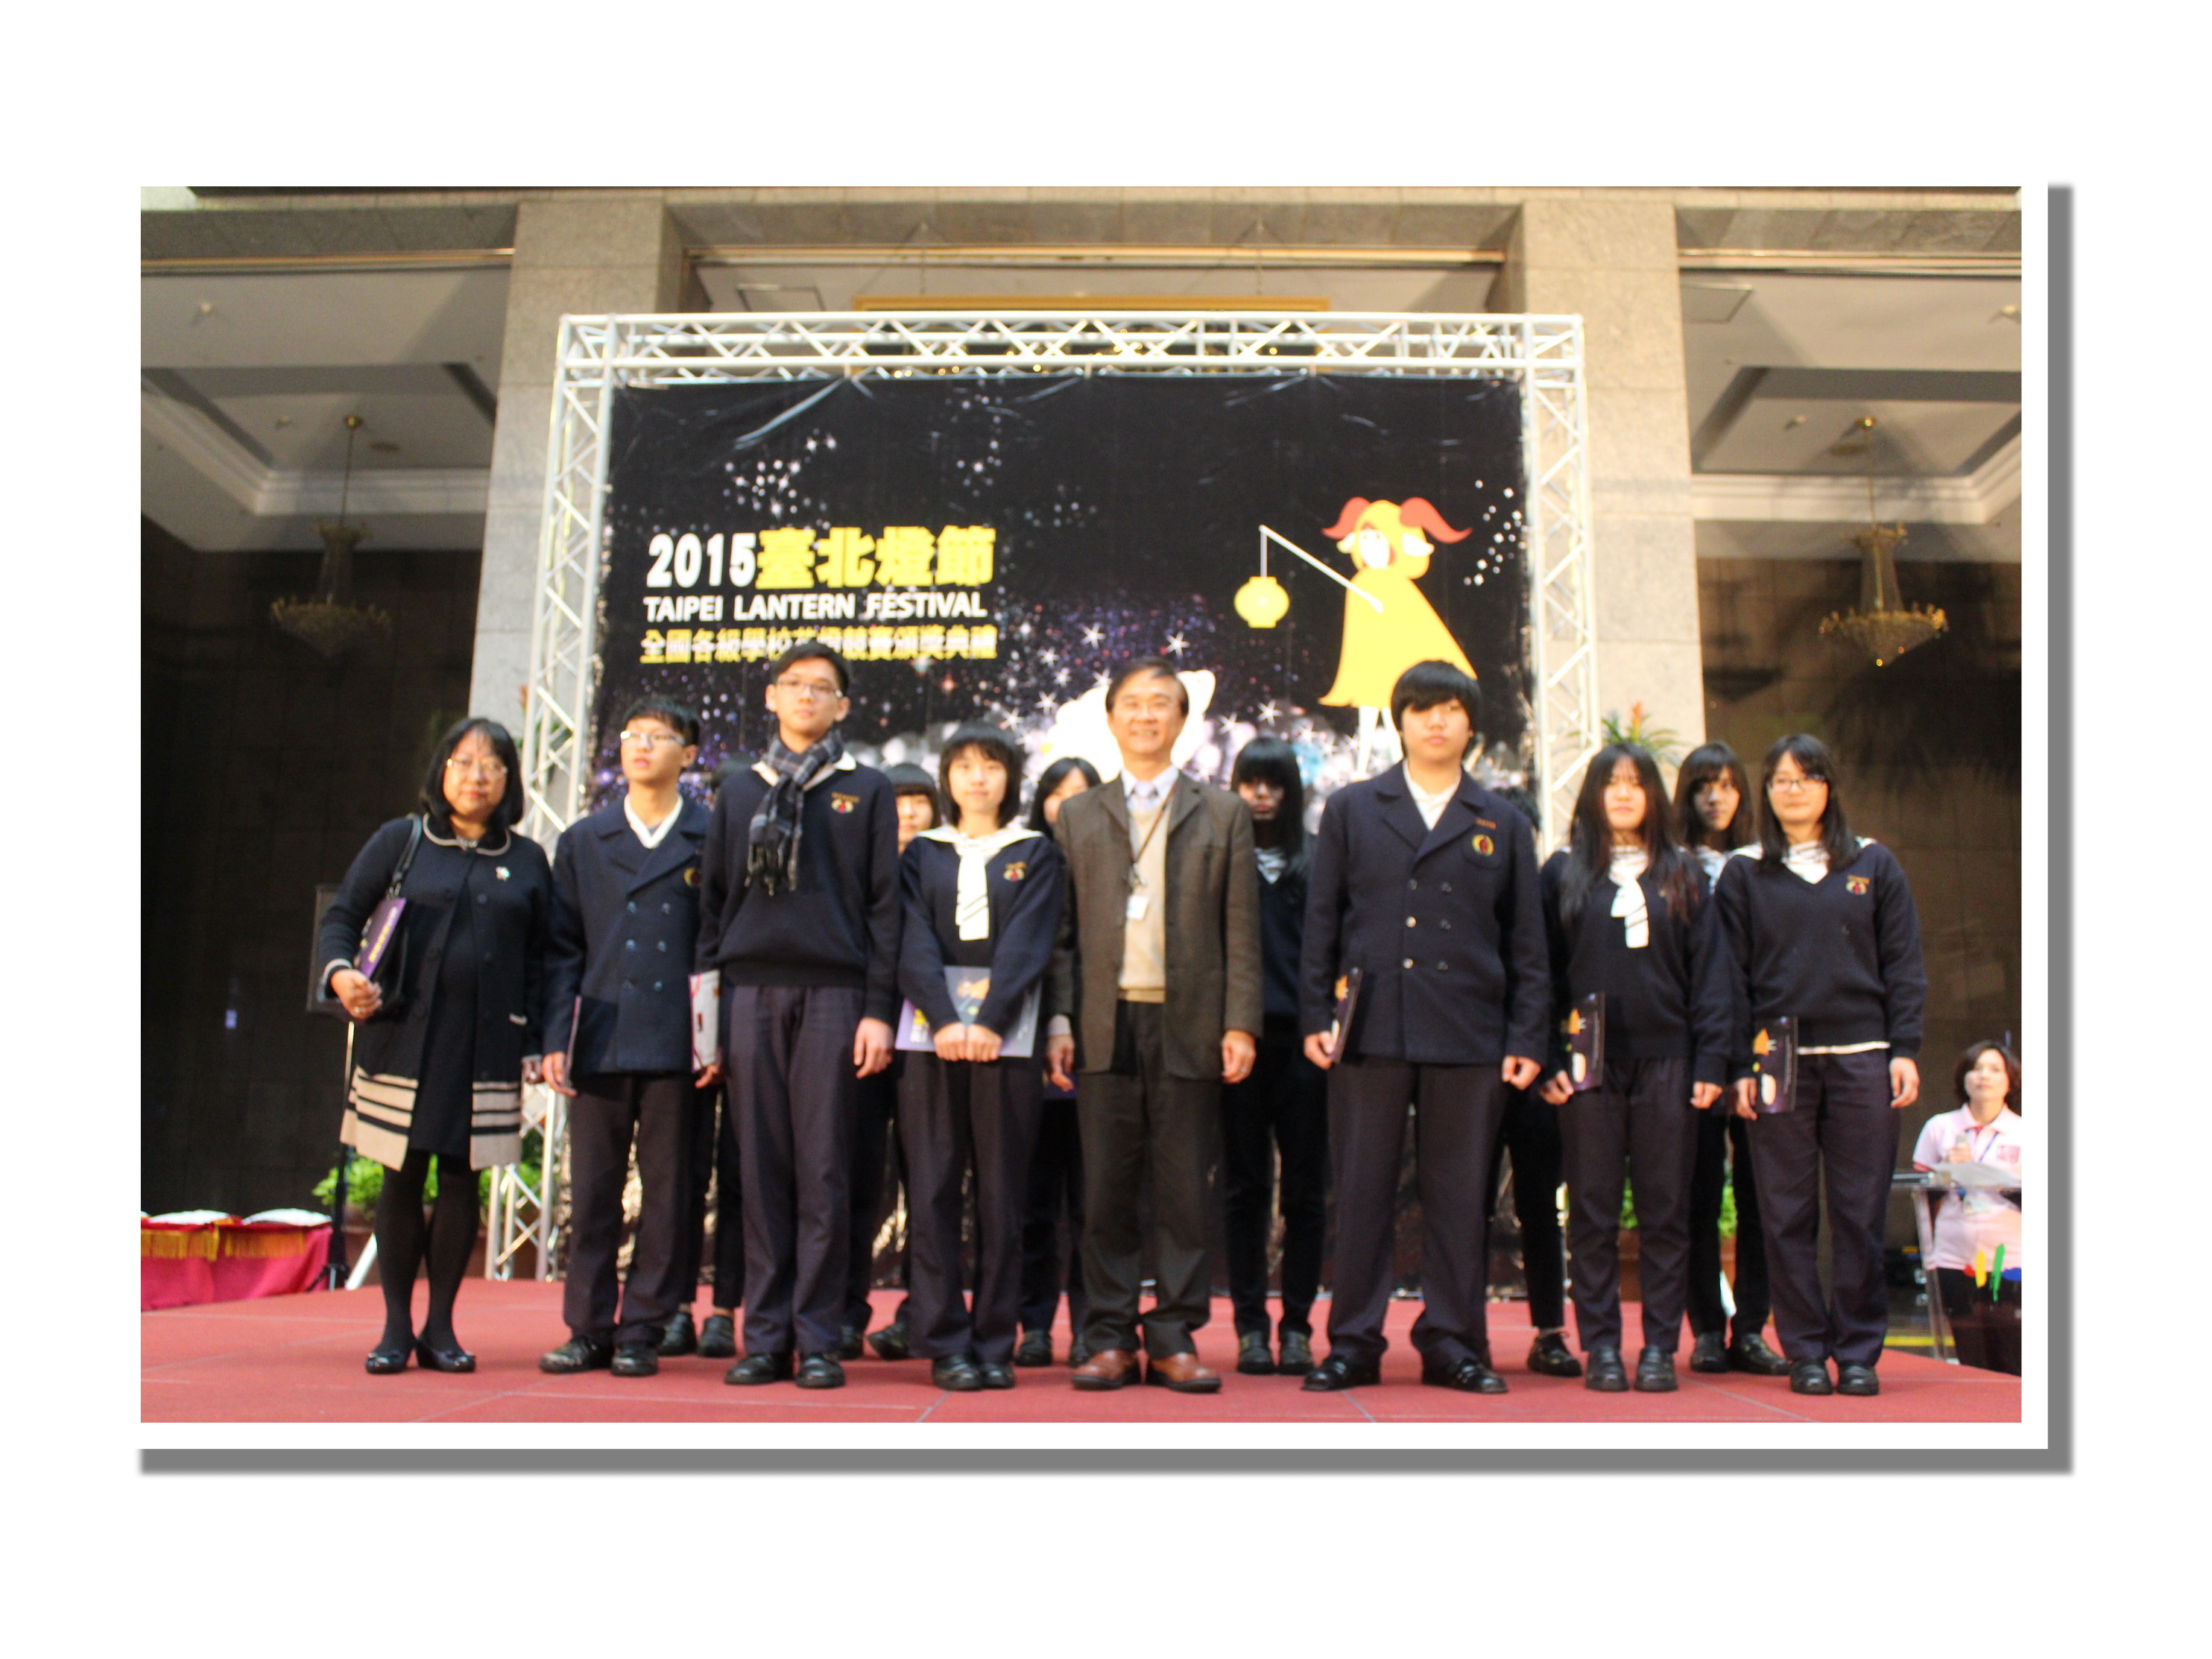 2015年「臺北燈節」羊年花燈 頒獎典禮